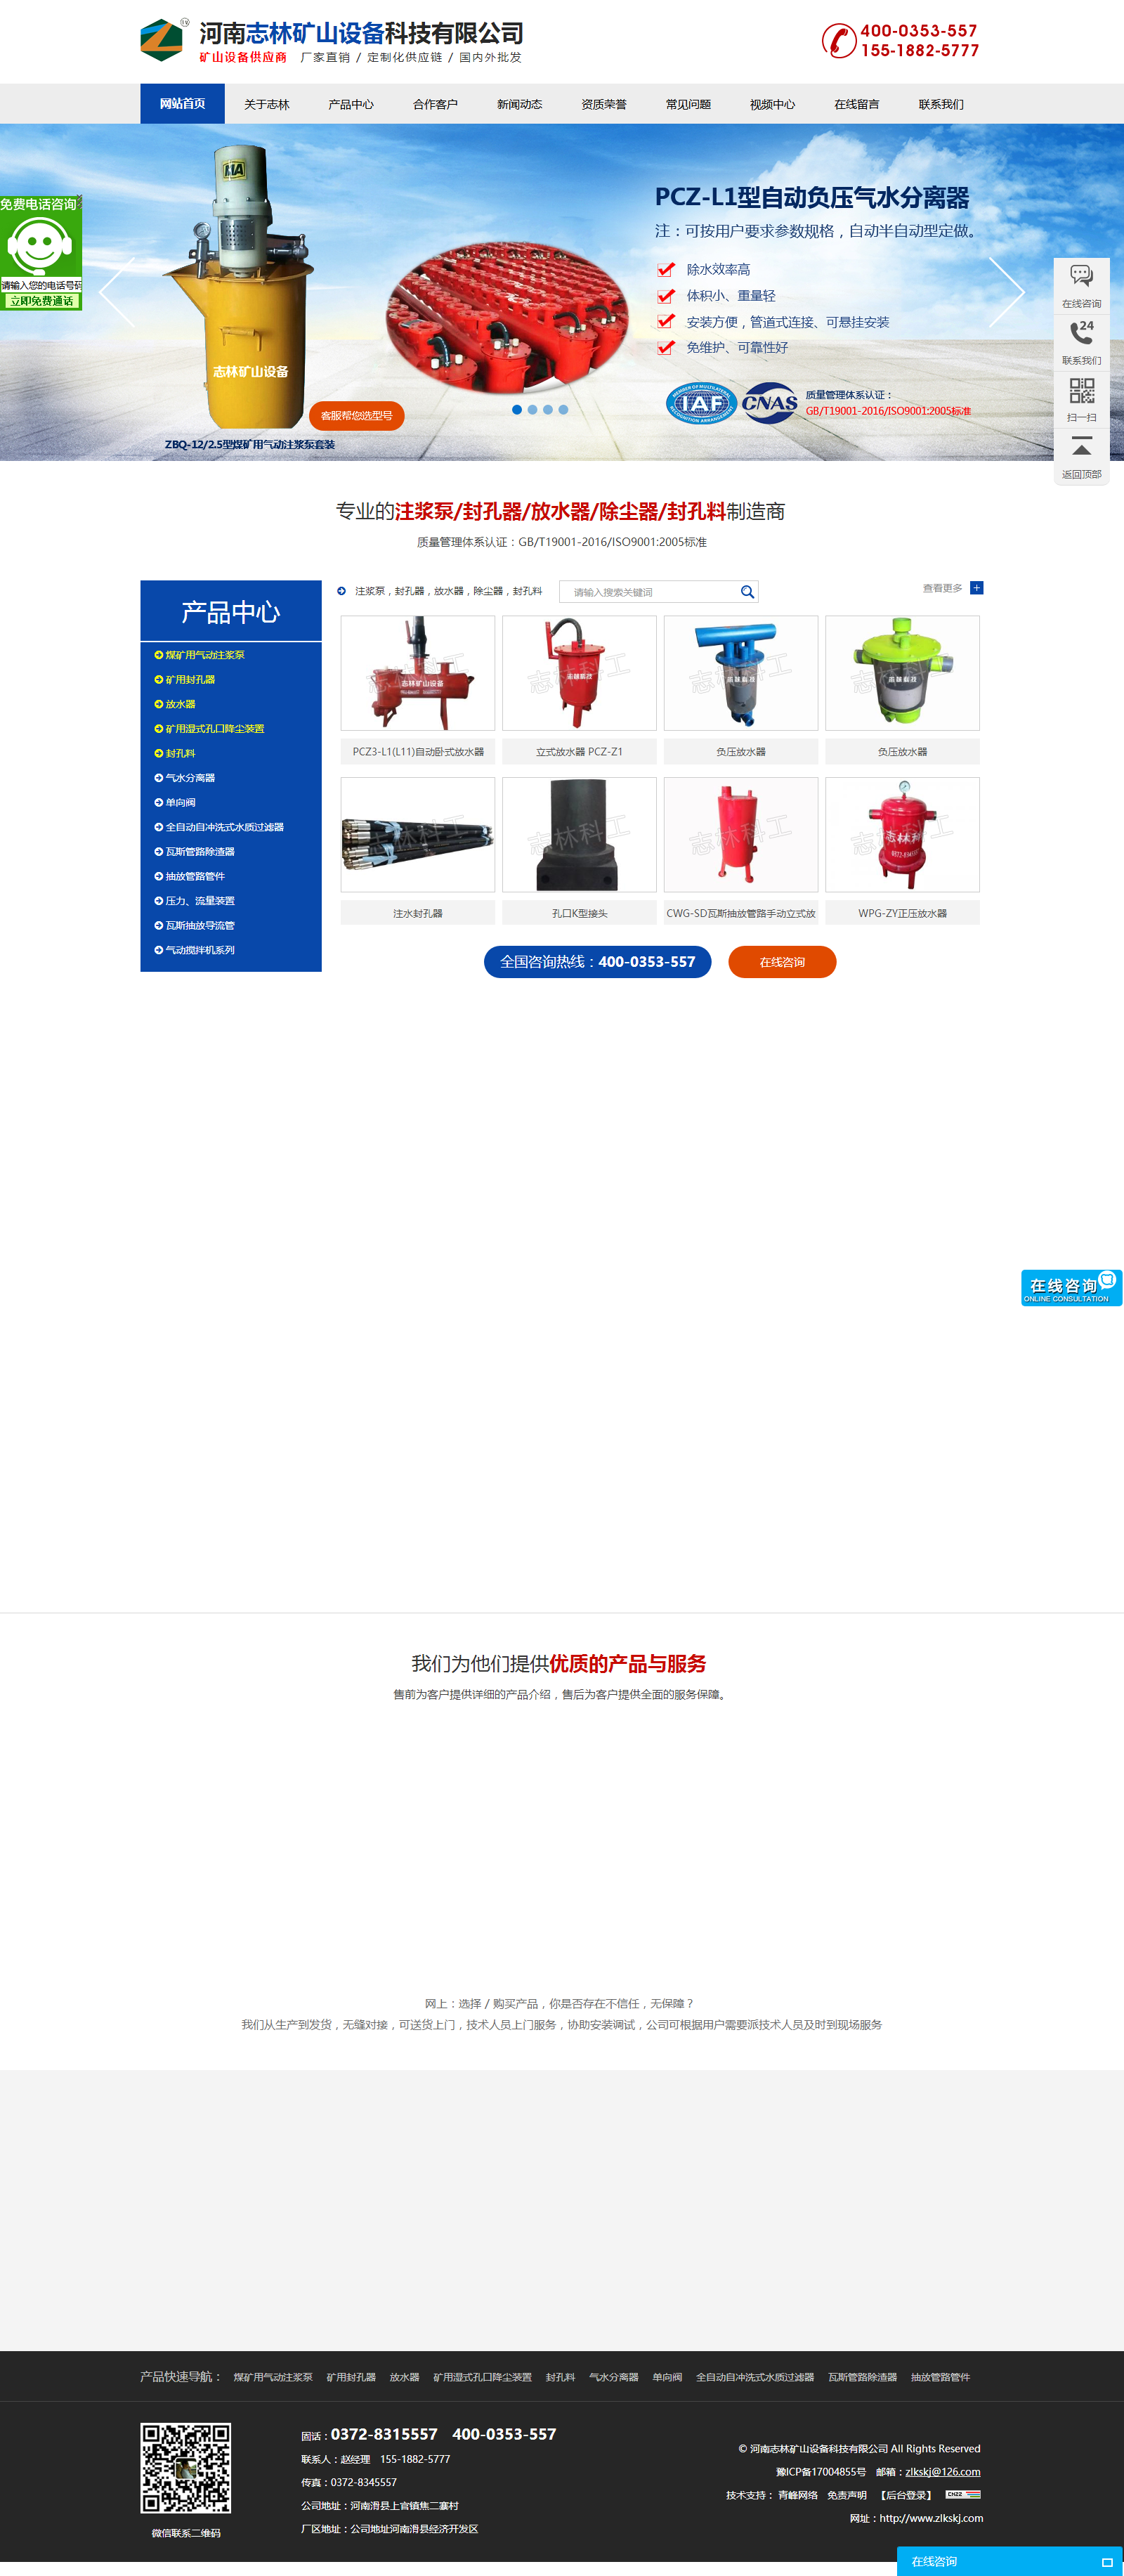 全网营销案例—河南志林矿山设备科技有限公司